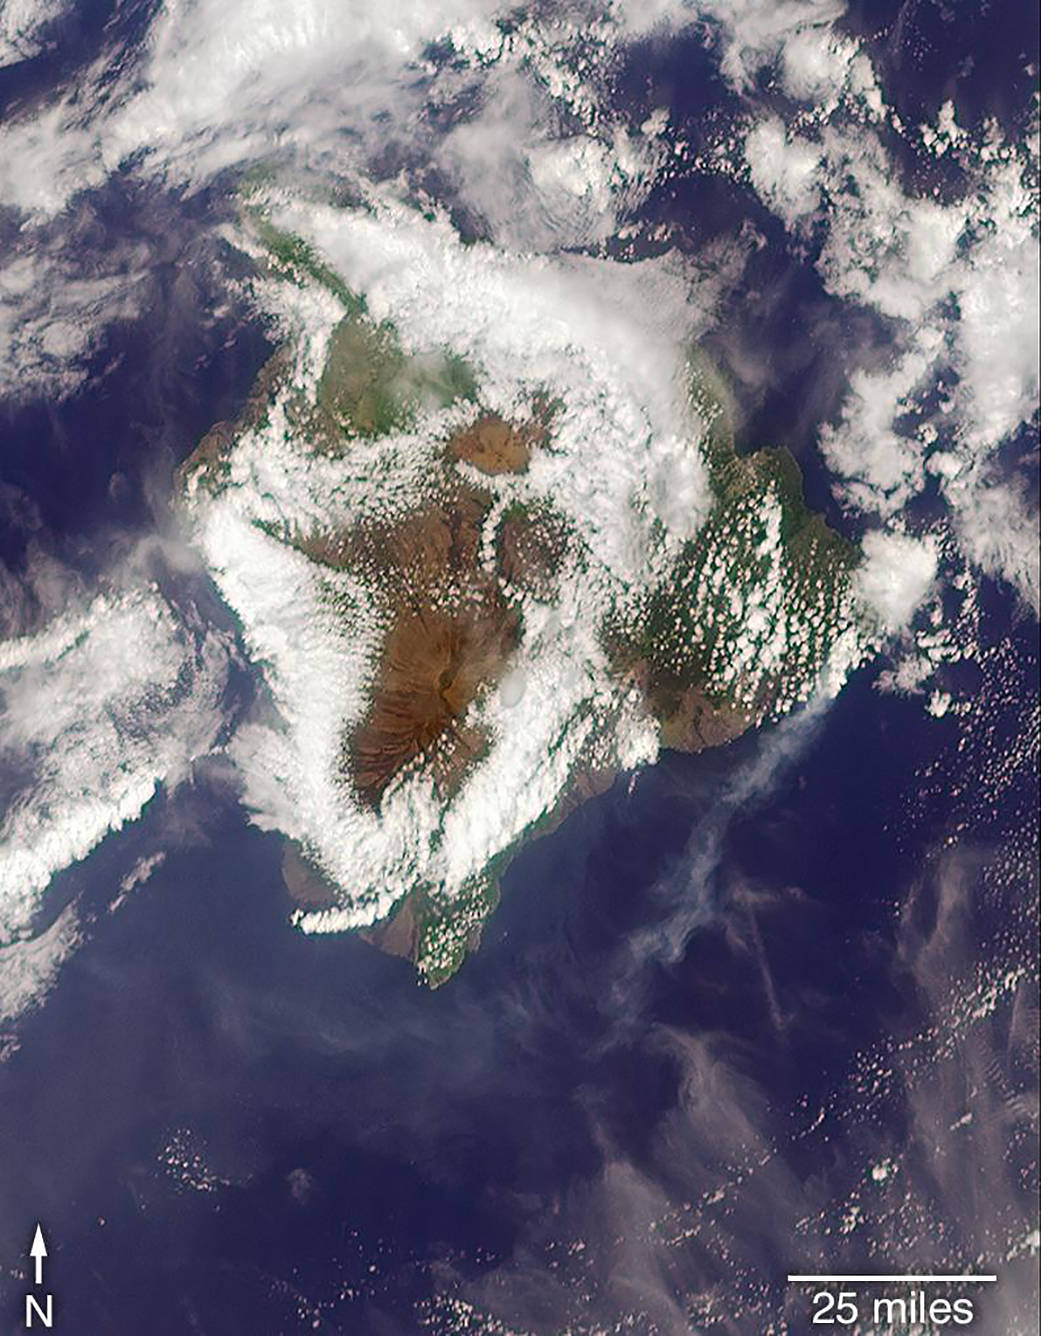 Watch stunning NASA image of huge ash erupting from Kilauea volcano in Hawaii